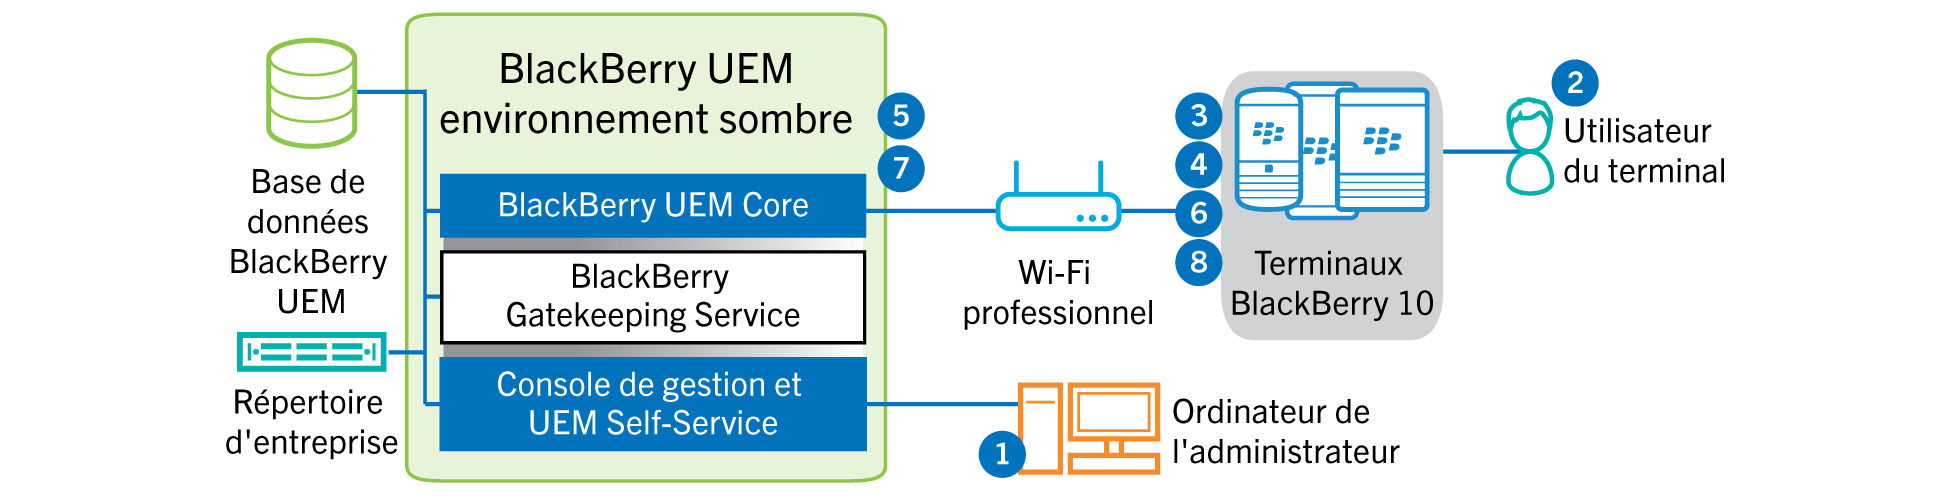 Schéma illustrant les étapes suivies et les composants BlackBerry UEM utilisés lors de l'activation d'un terminal BlackBerry 10 dans un environnement de site sombre.